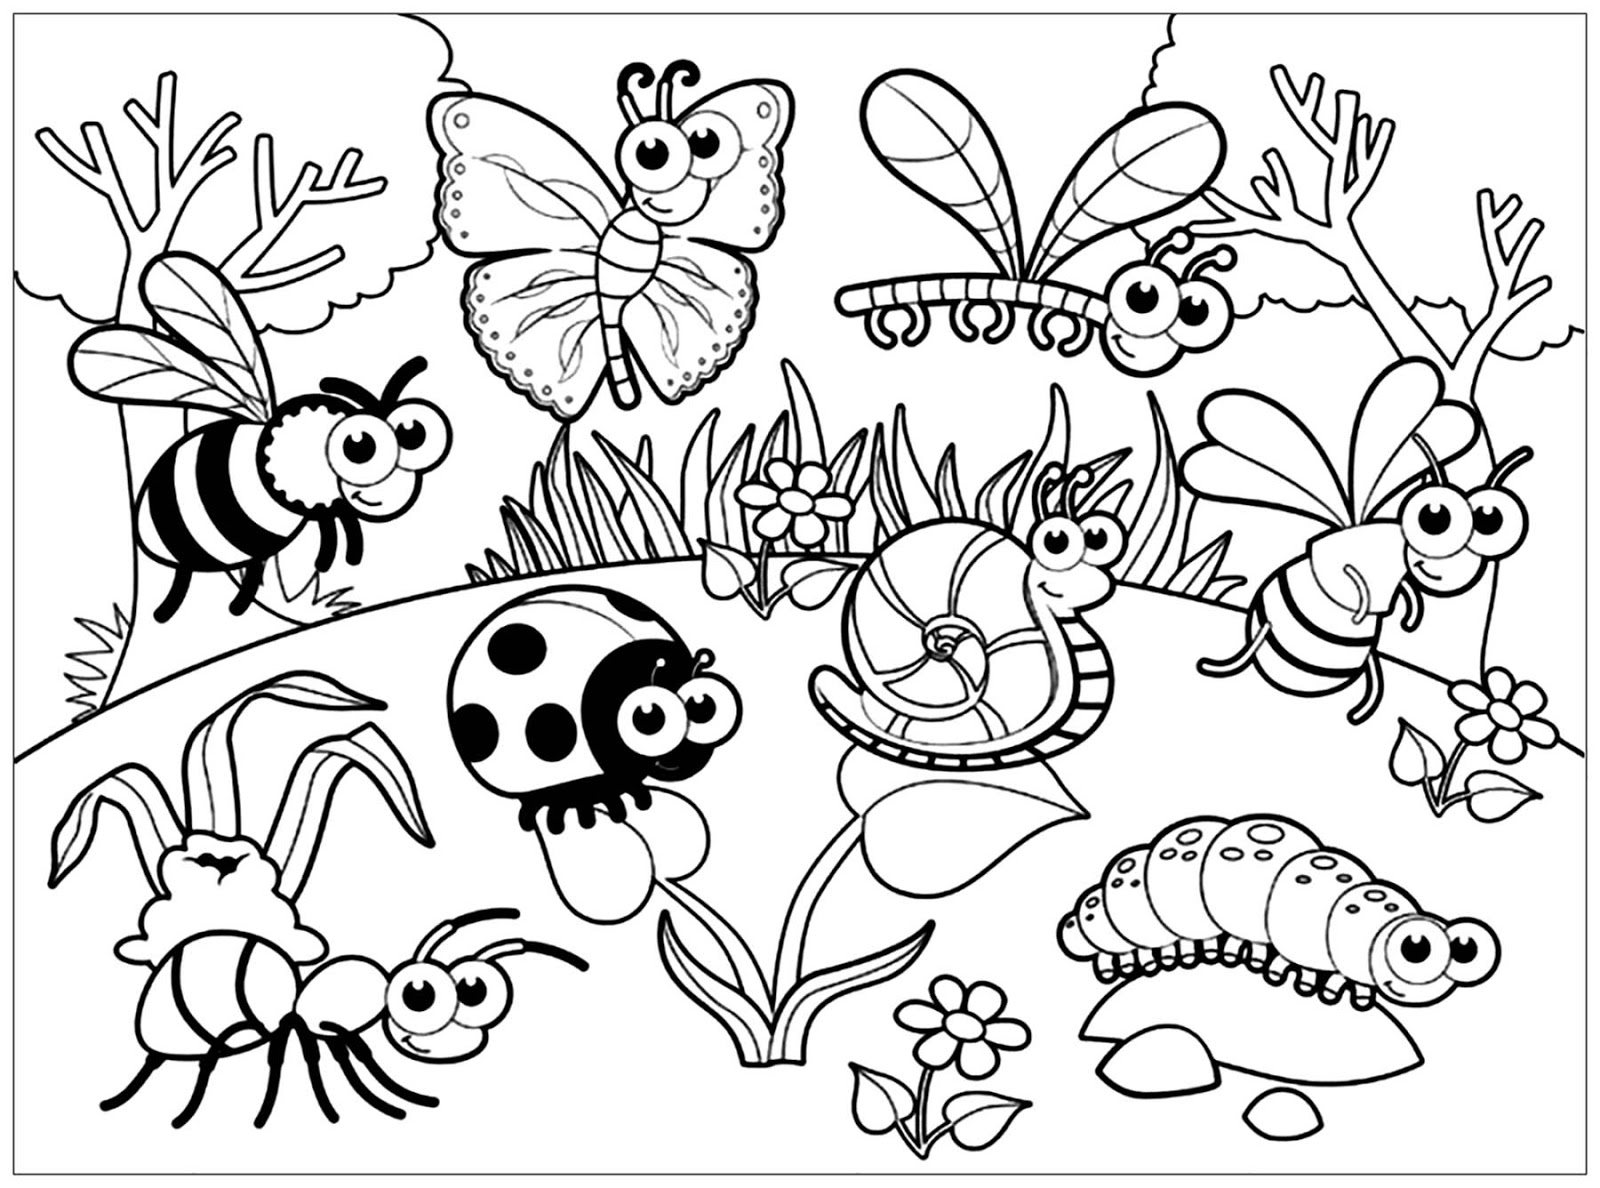 Tổng hợp các bức tranh tô màu côn trùng cho bé